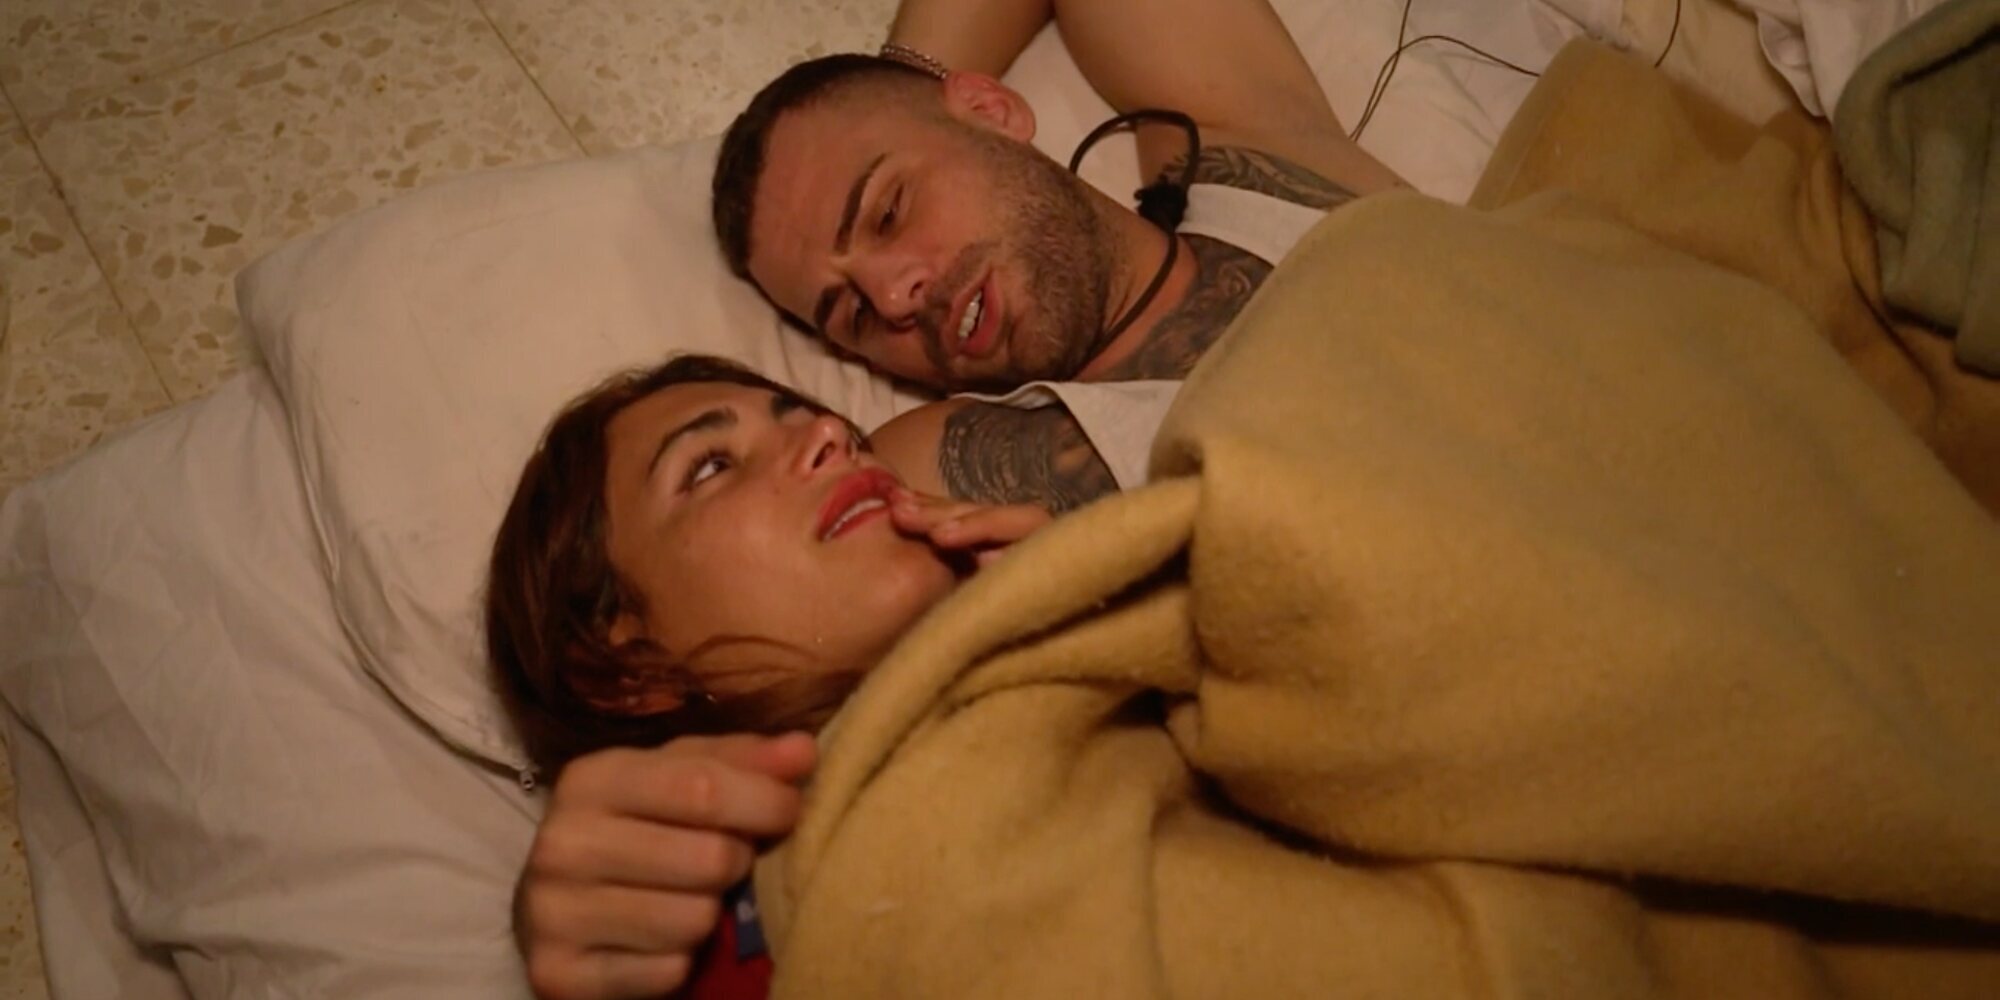 Daniela Requena e Iván Molina no esconden su atracción en 'Pesadilla en el Paraíso': "Palpé sus zonas íntimas"